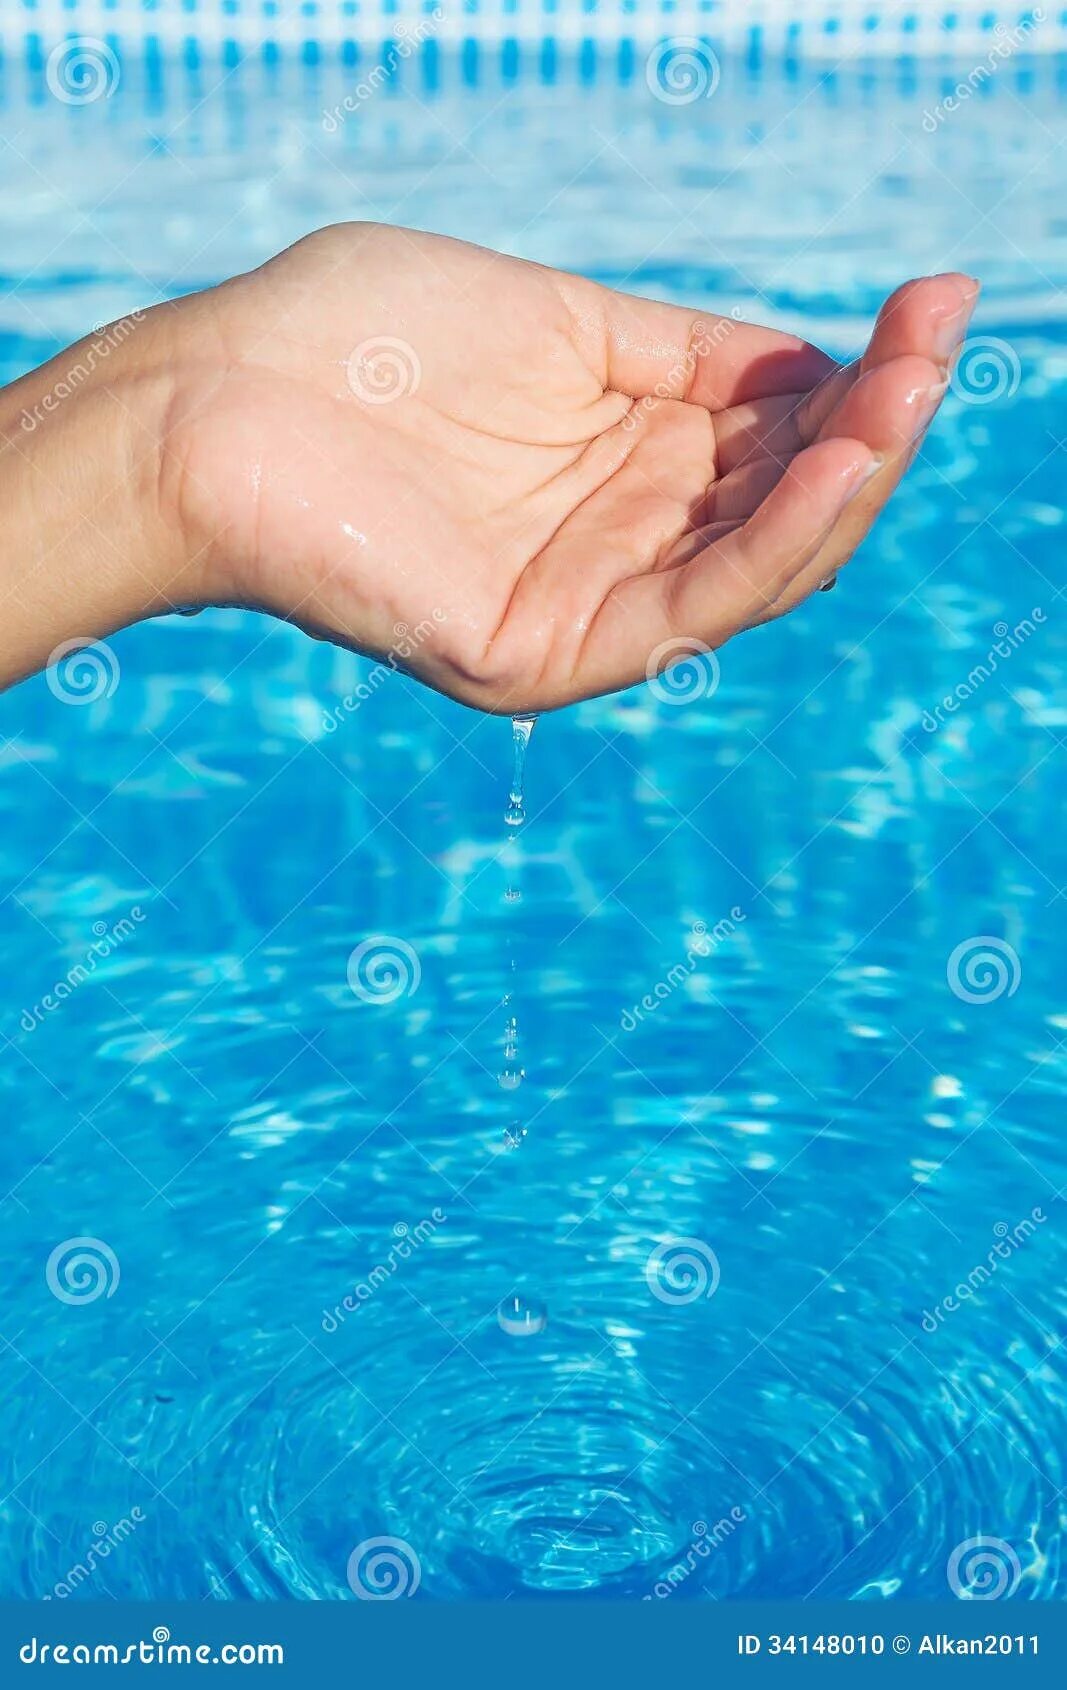 Вода в руках. Красивая рука в воде. Вода в ладонях. Женская рука в воде. Включи руки вода